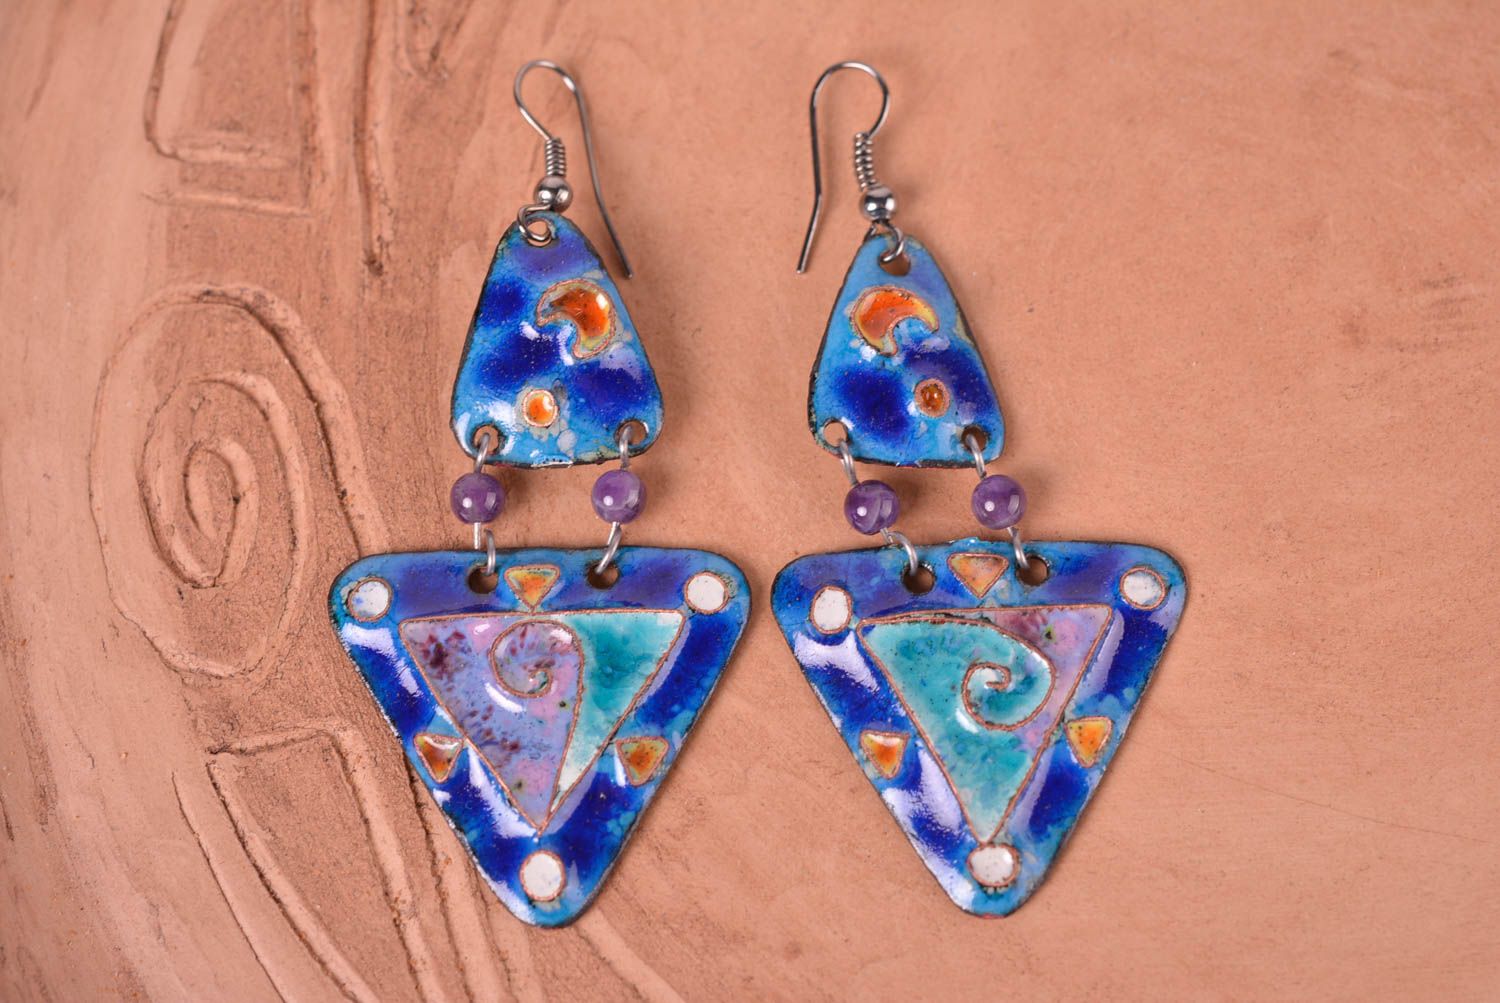 Unusual handmade metal earrings costume jewelry designs metal craft gift ideas  photo 1